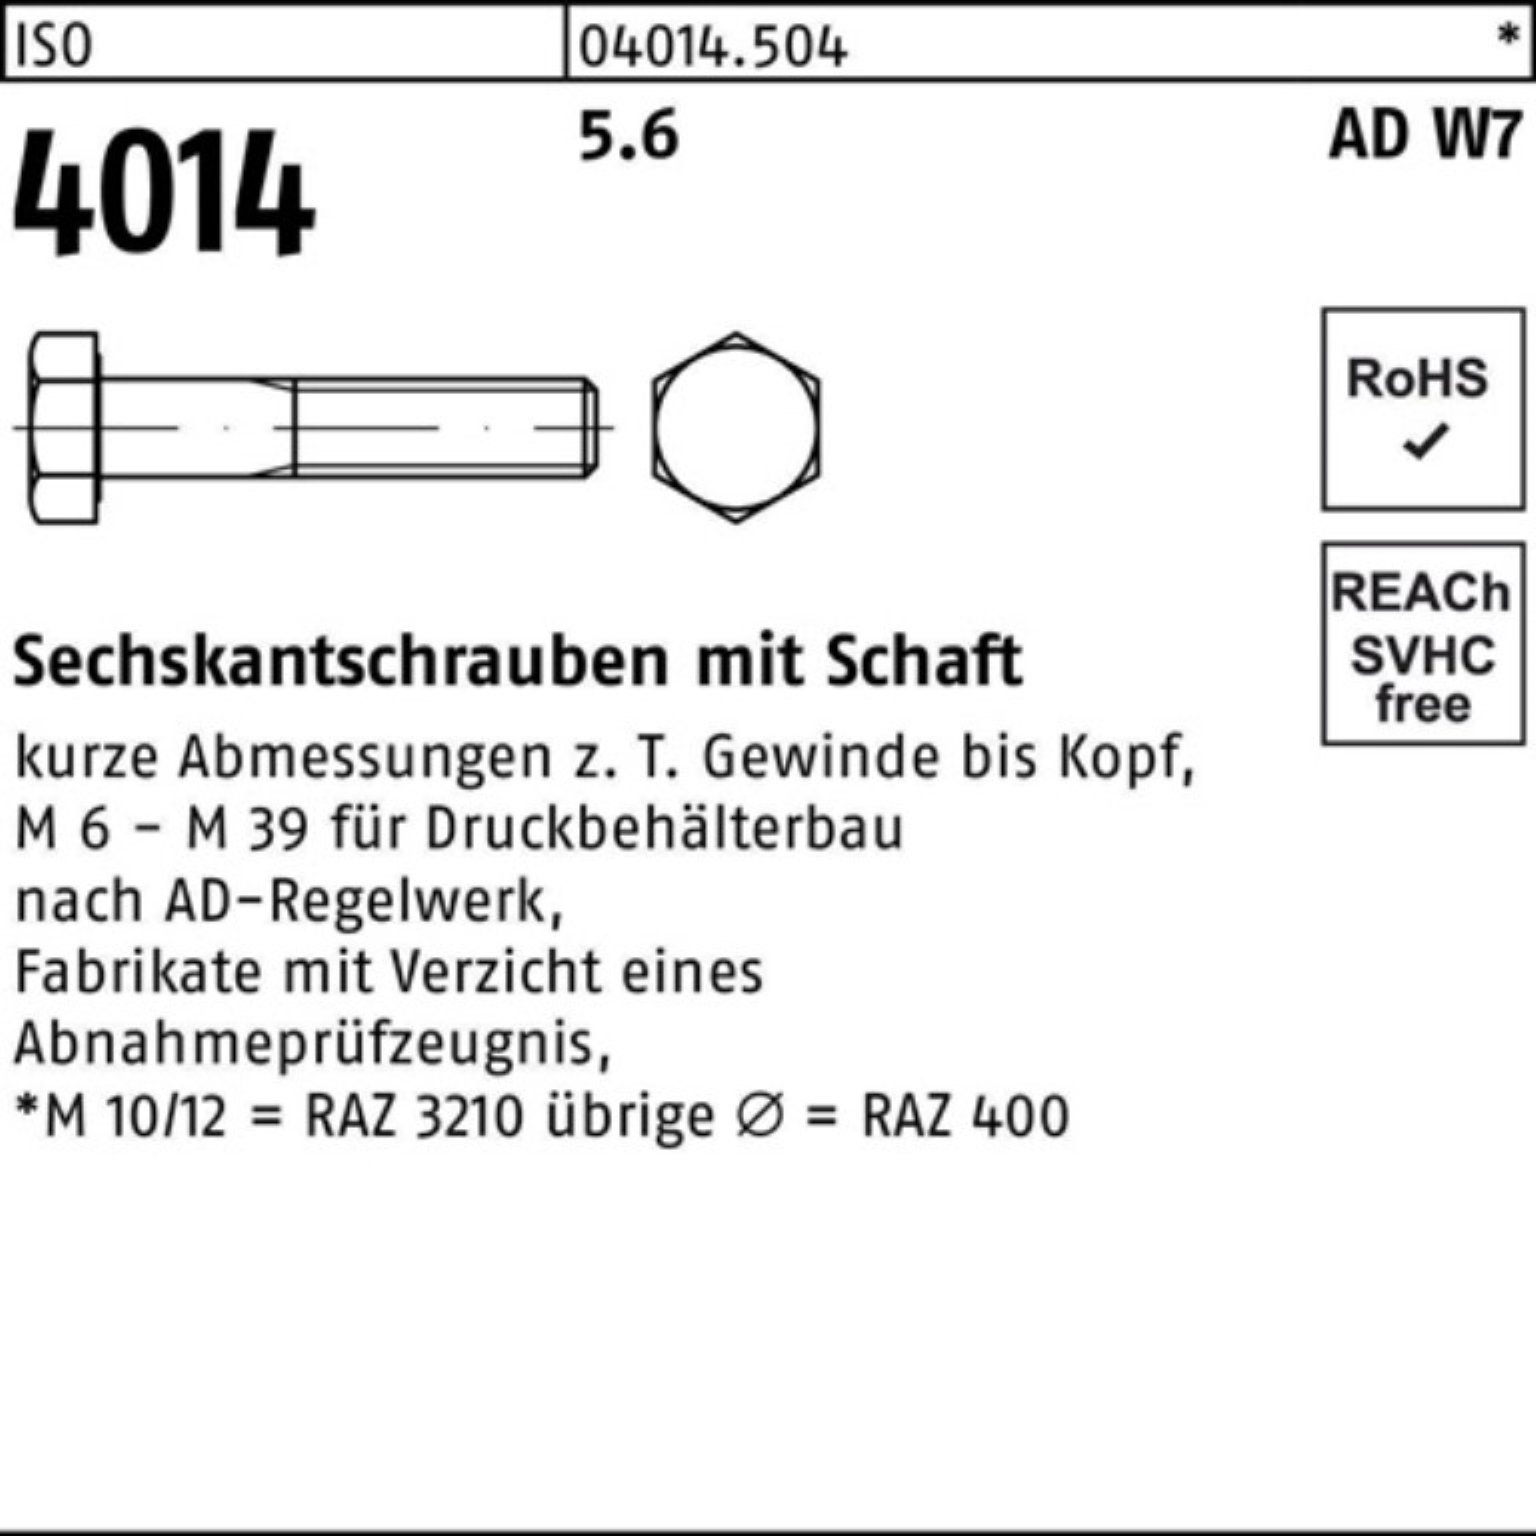 Bufab Sechskantschraube 100er Pack Sechskantschraube Schaft W7 4014 ISO 5.6 1 Stück M20x 190